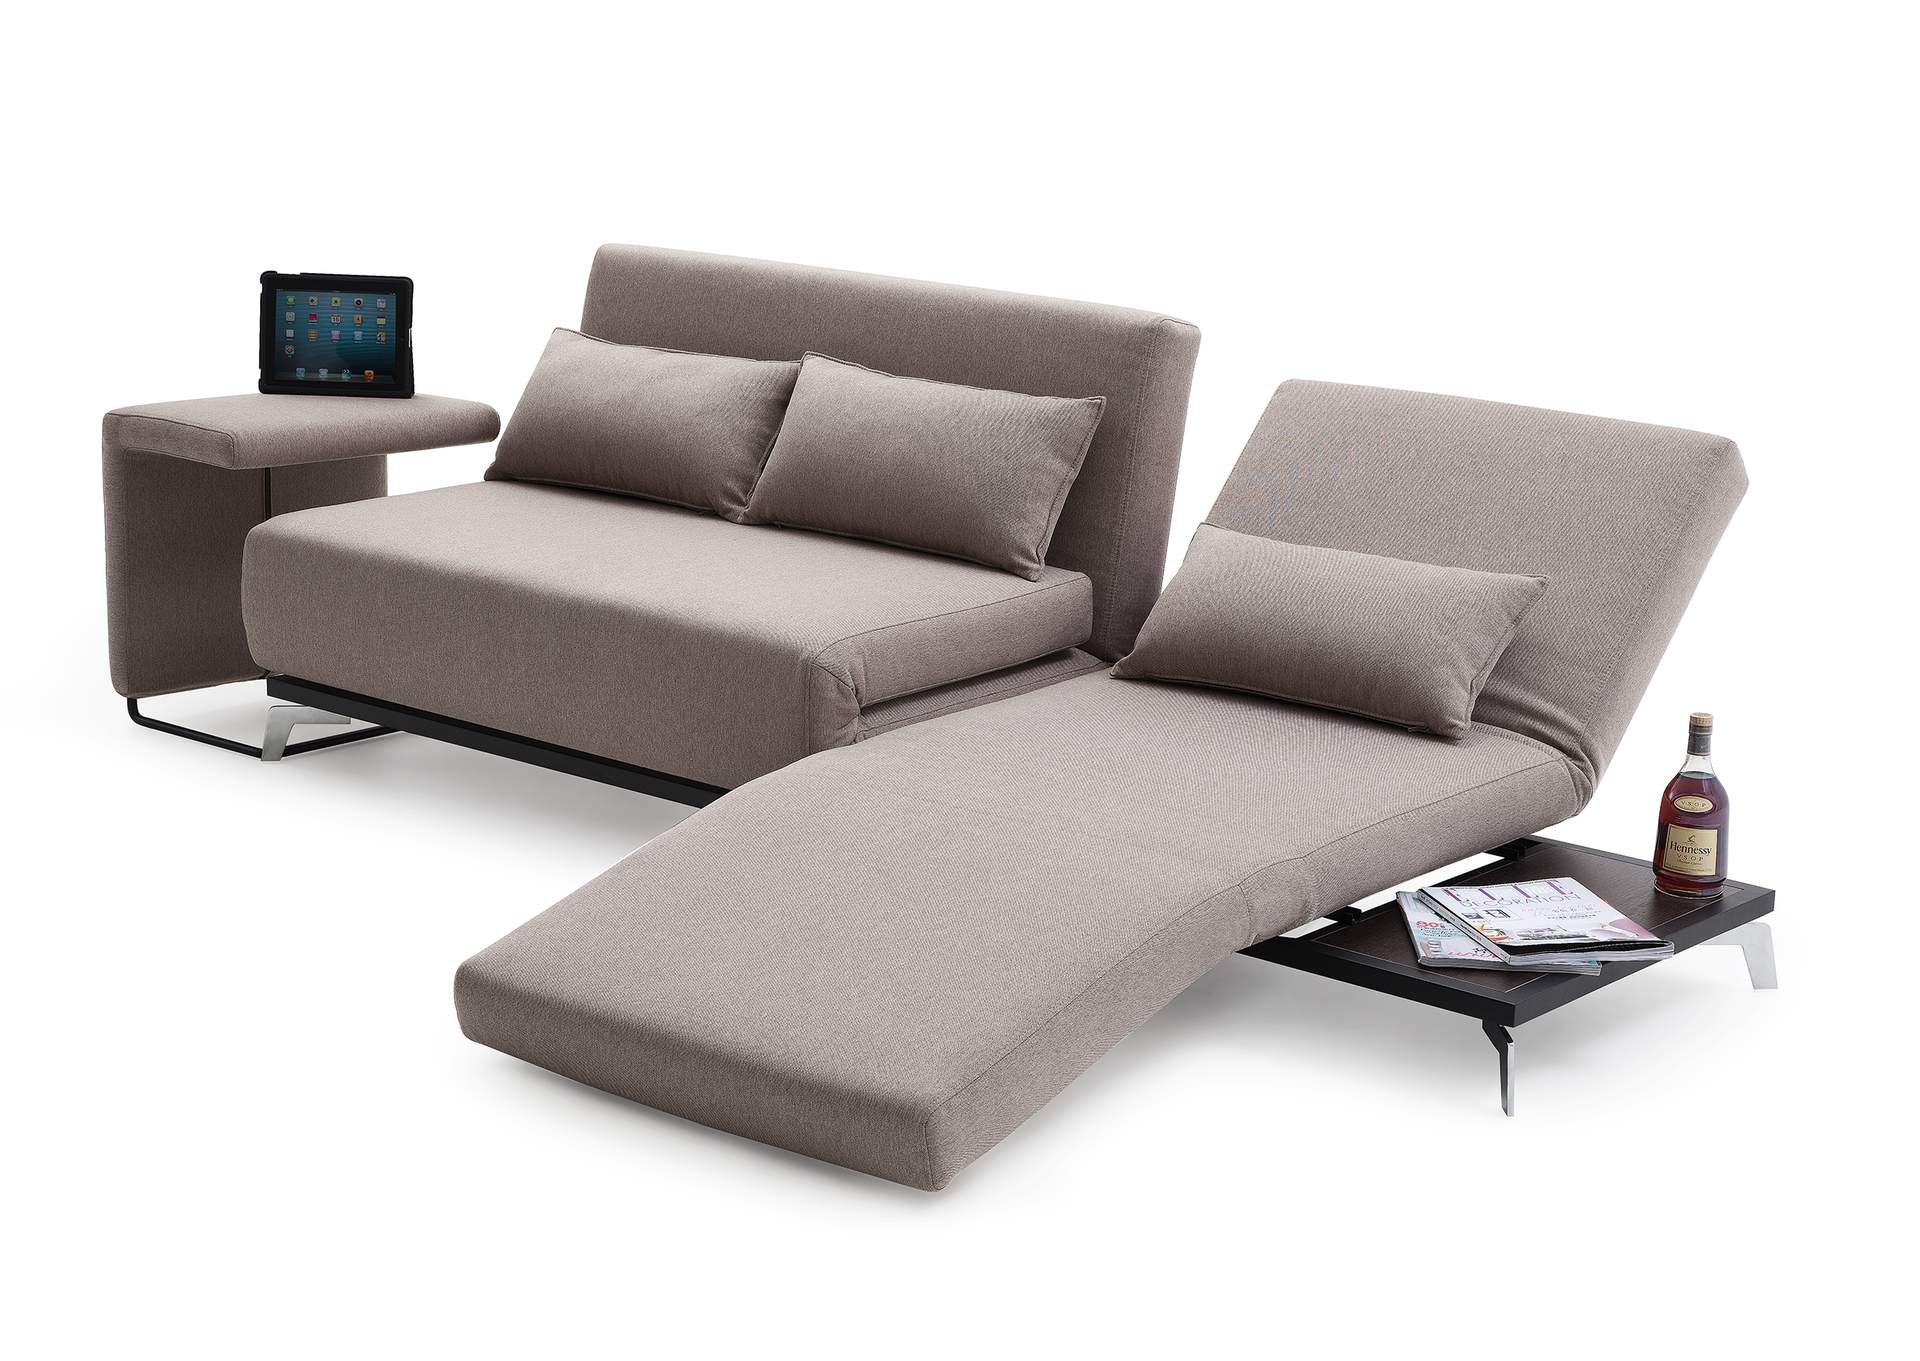 Premium Sofa Bed JH033 in Beige Fabric,J&M Furniture